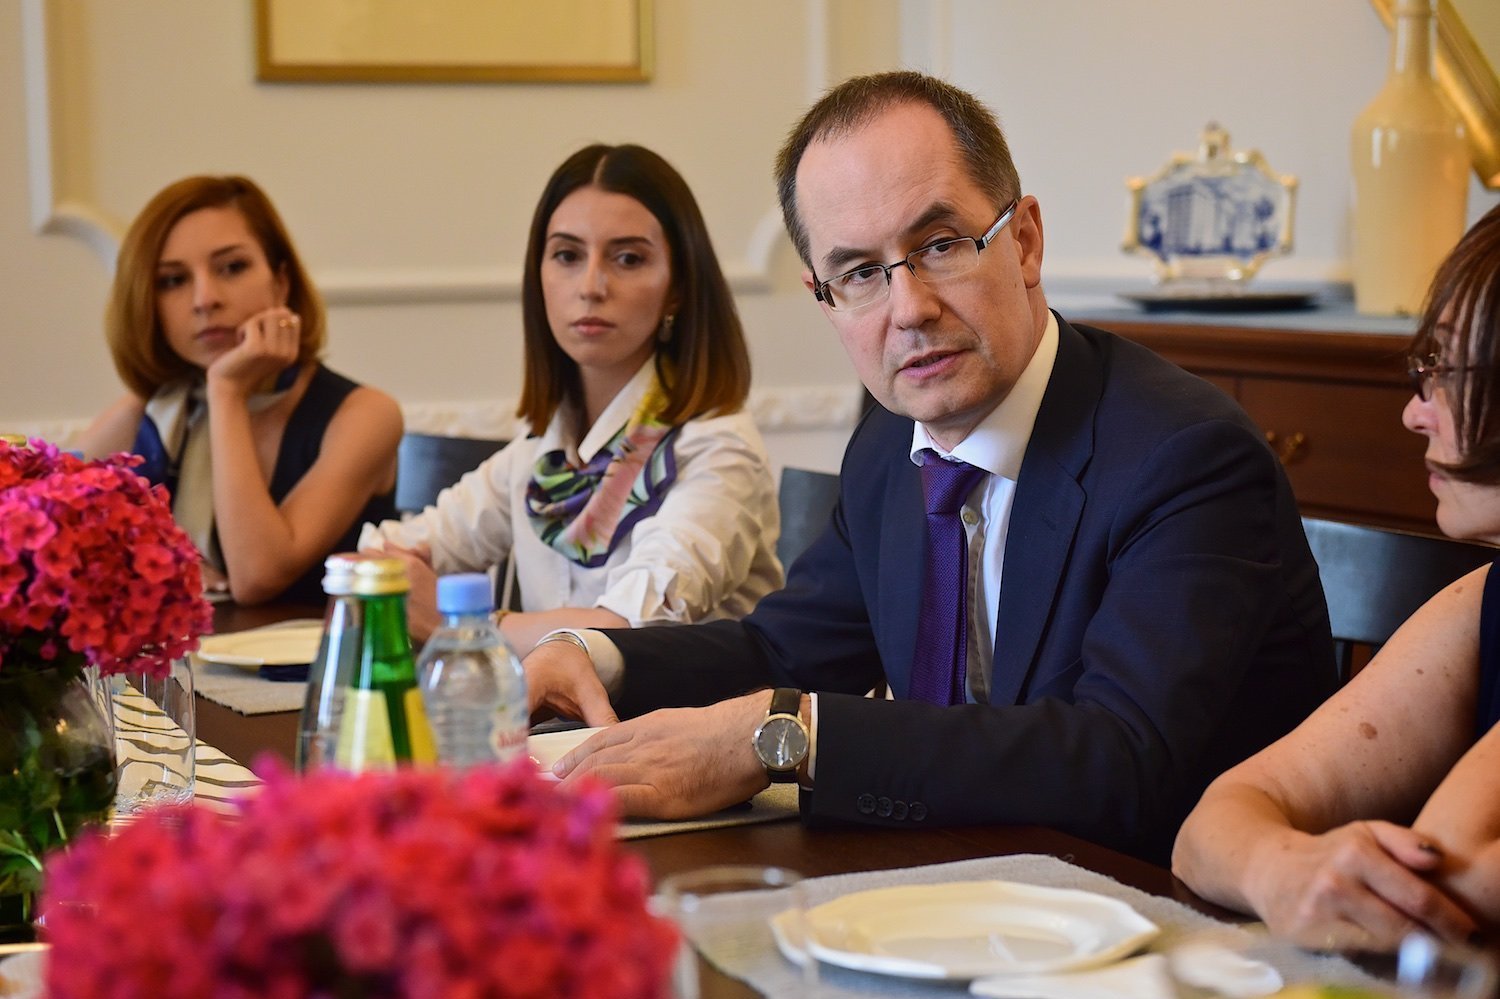 Глава секции российских интересов при посольстве Швейцарии в Грузии Вадим Горелов на встрече с жителями Грузии.